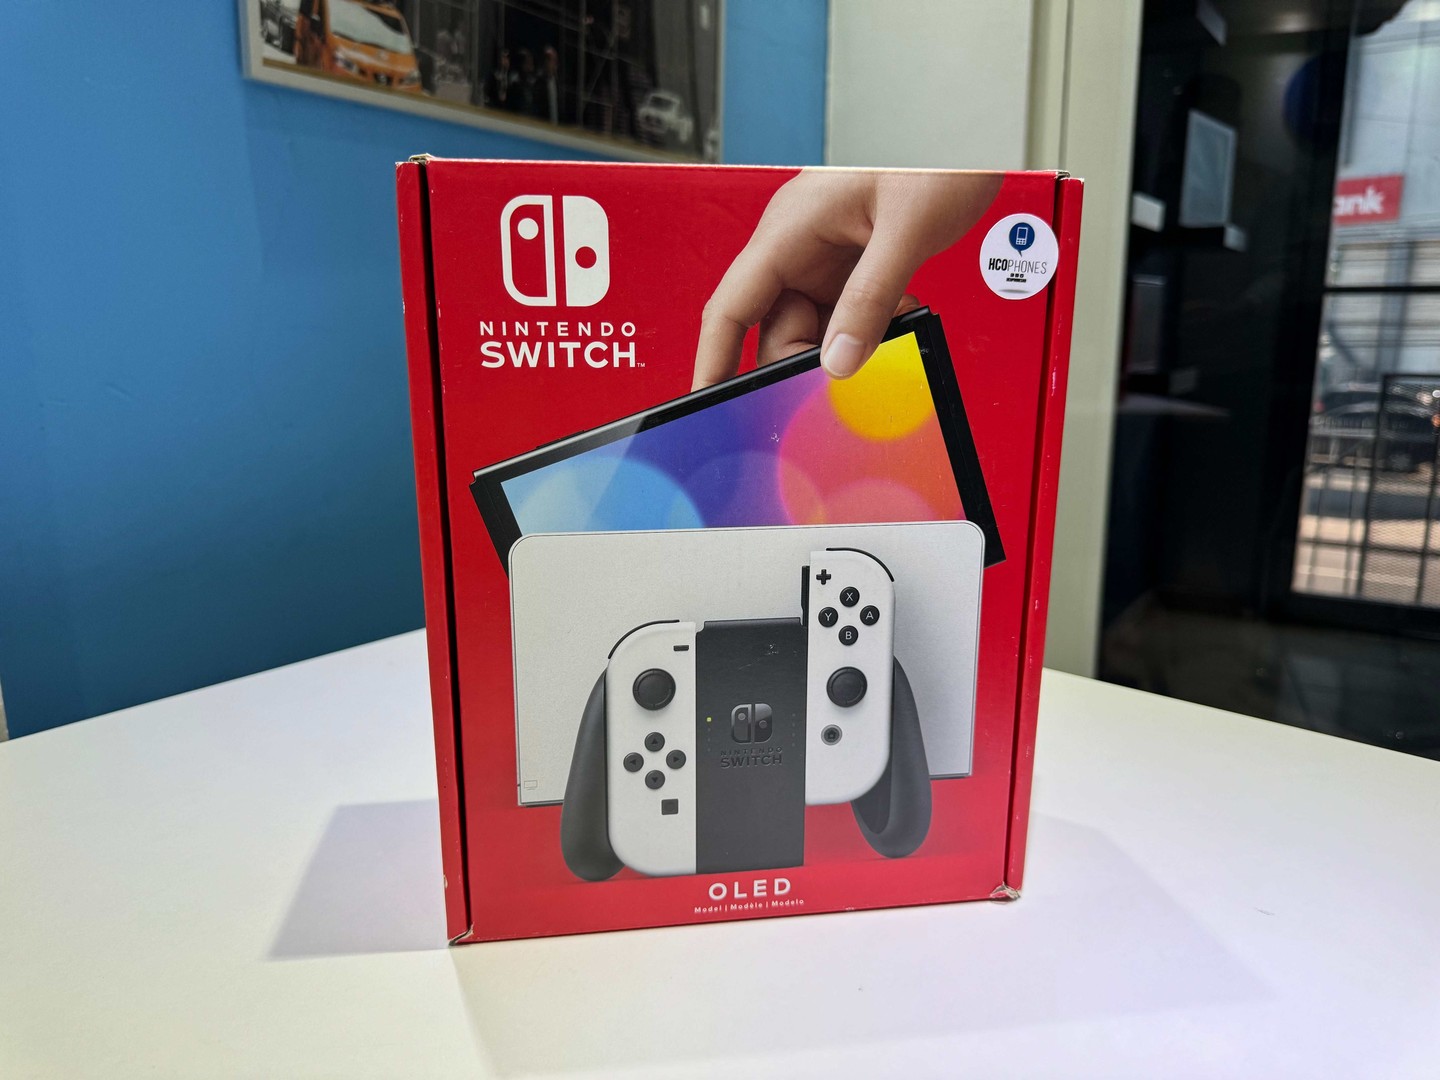 consolas y videojuegos - Nintendo Switch Oled Nuevos Sellados, Originales RD$ 18,995 NEG/ TIENDA